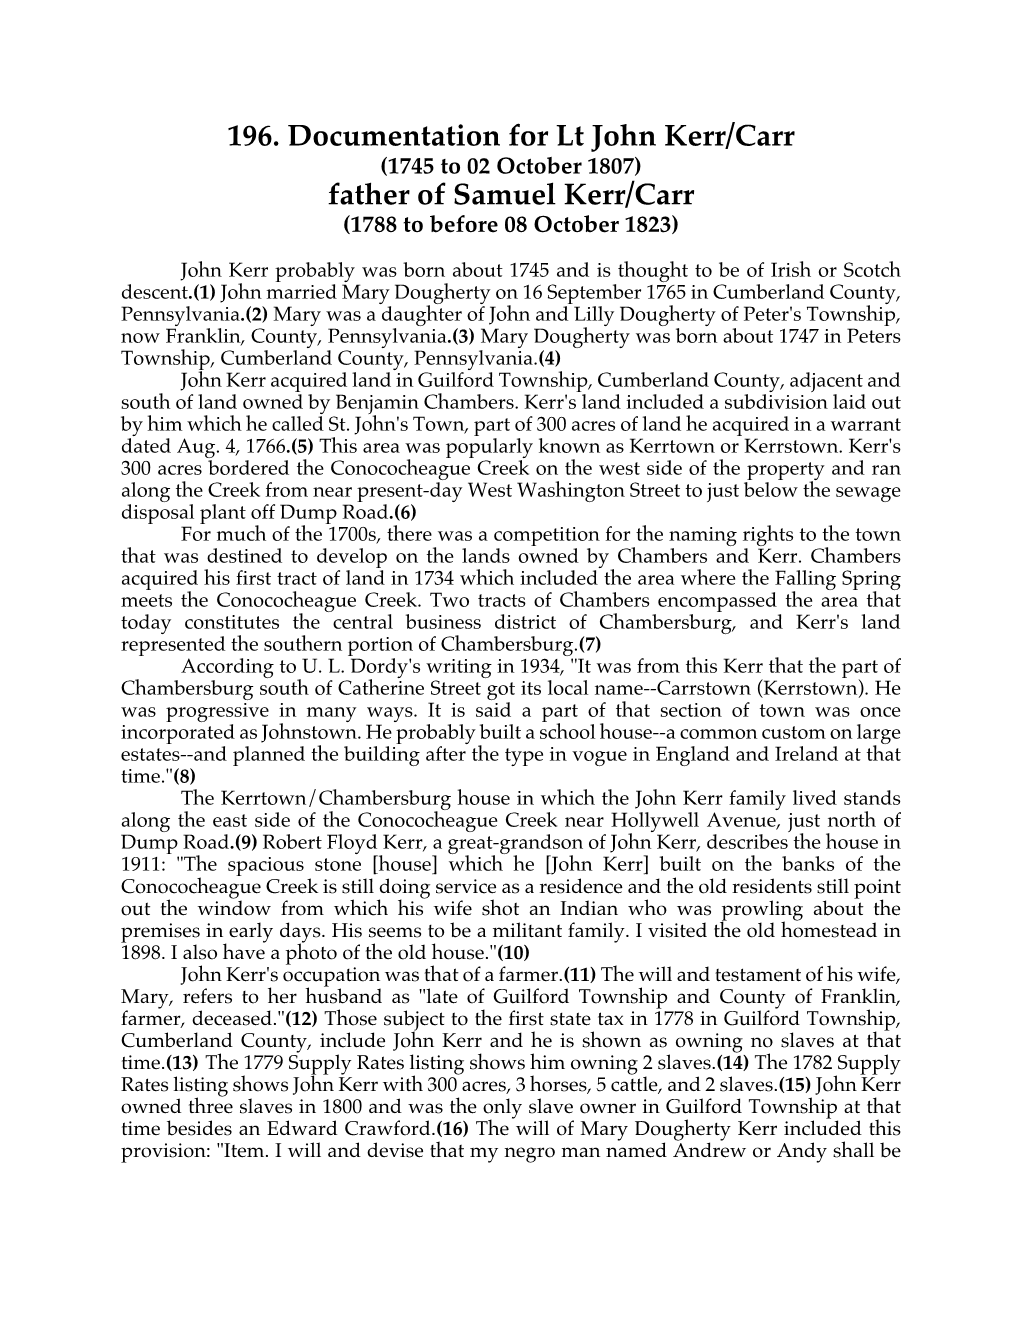 196. Documentation for Lt John Kerr/Carr Father of Samuel Kerr/Carr